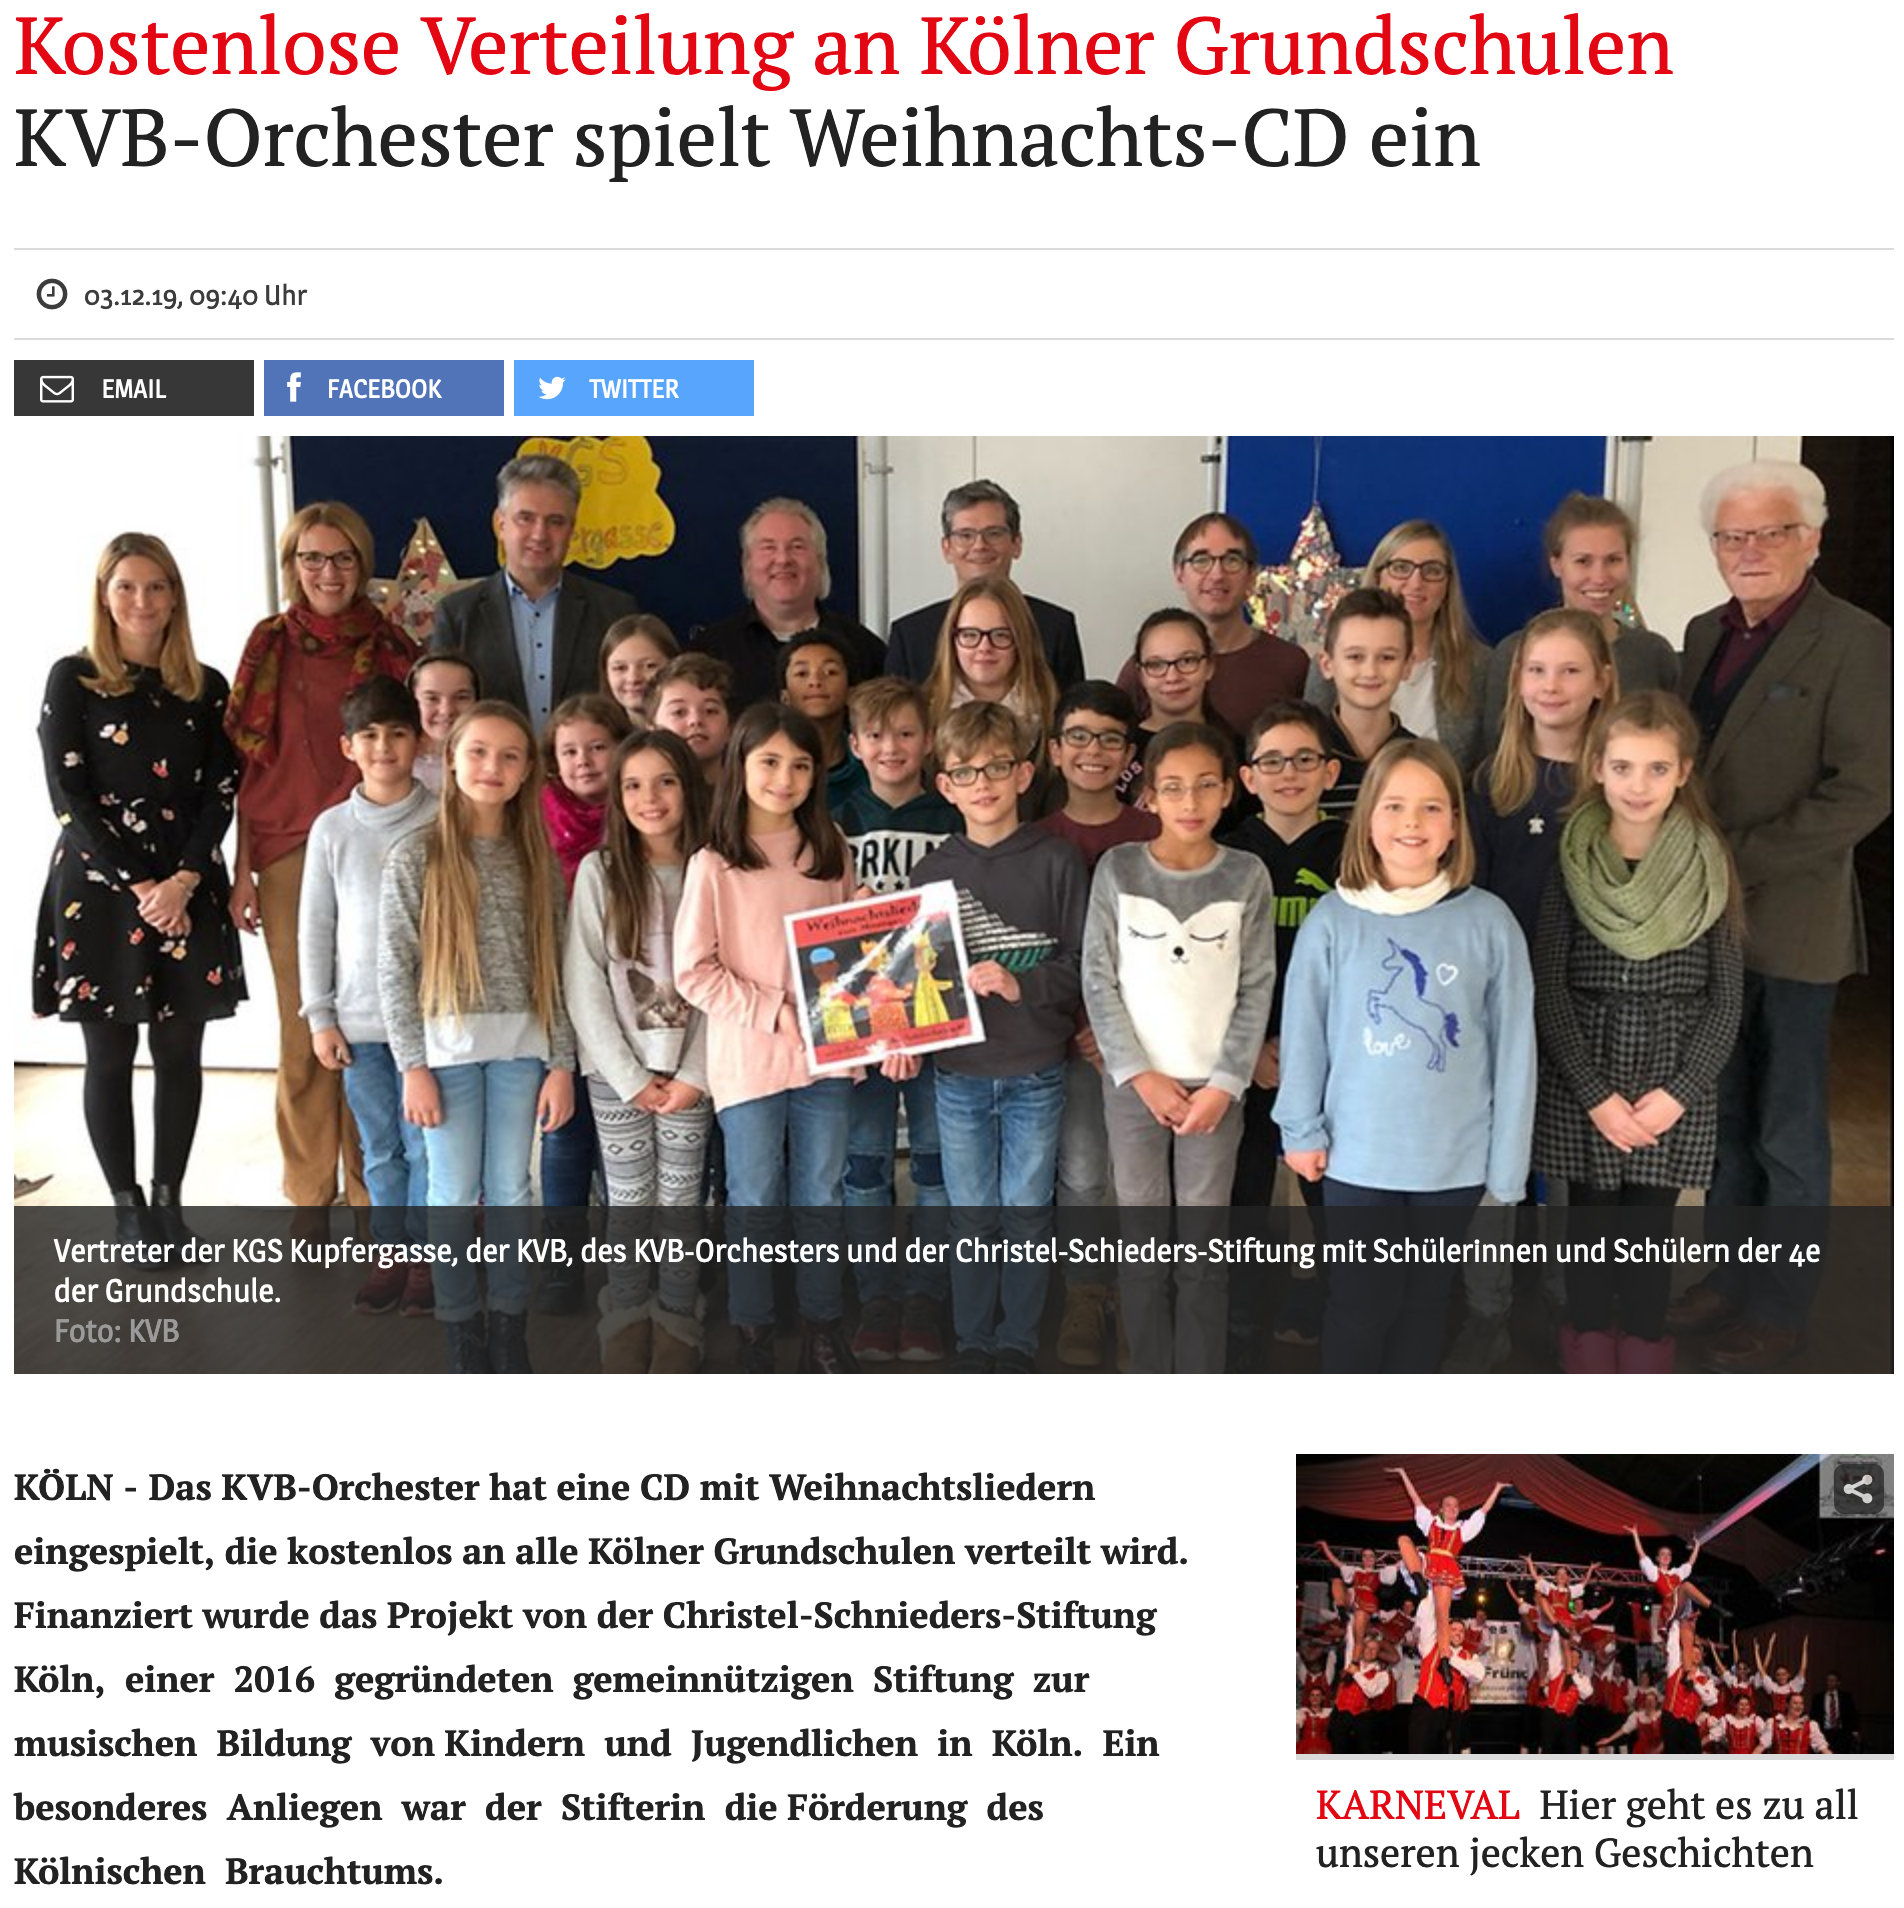 KVB-Orchester spielt Weihnachts-CD ein